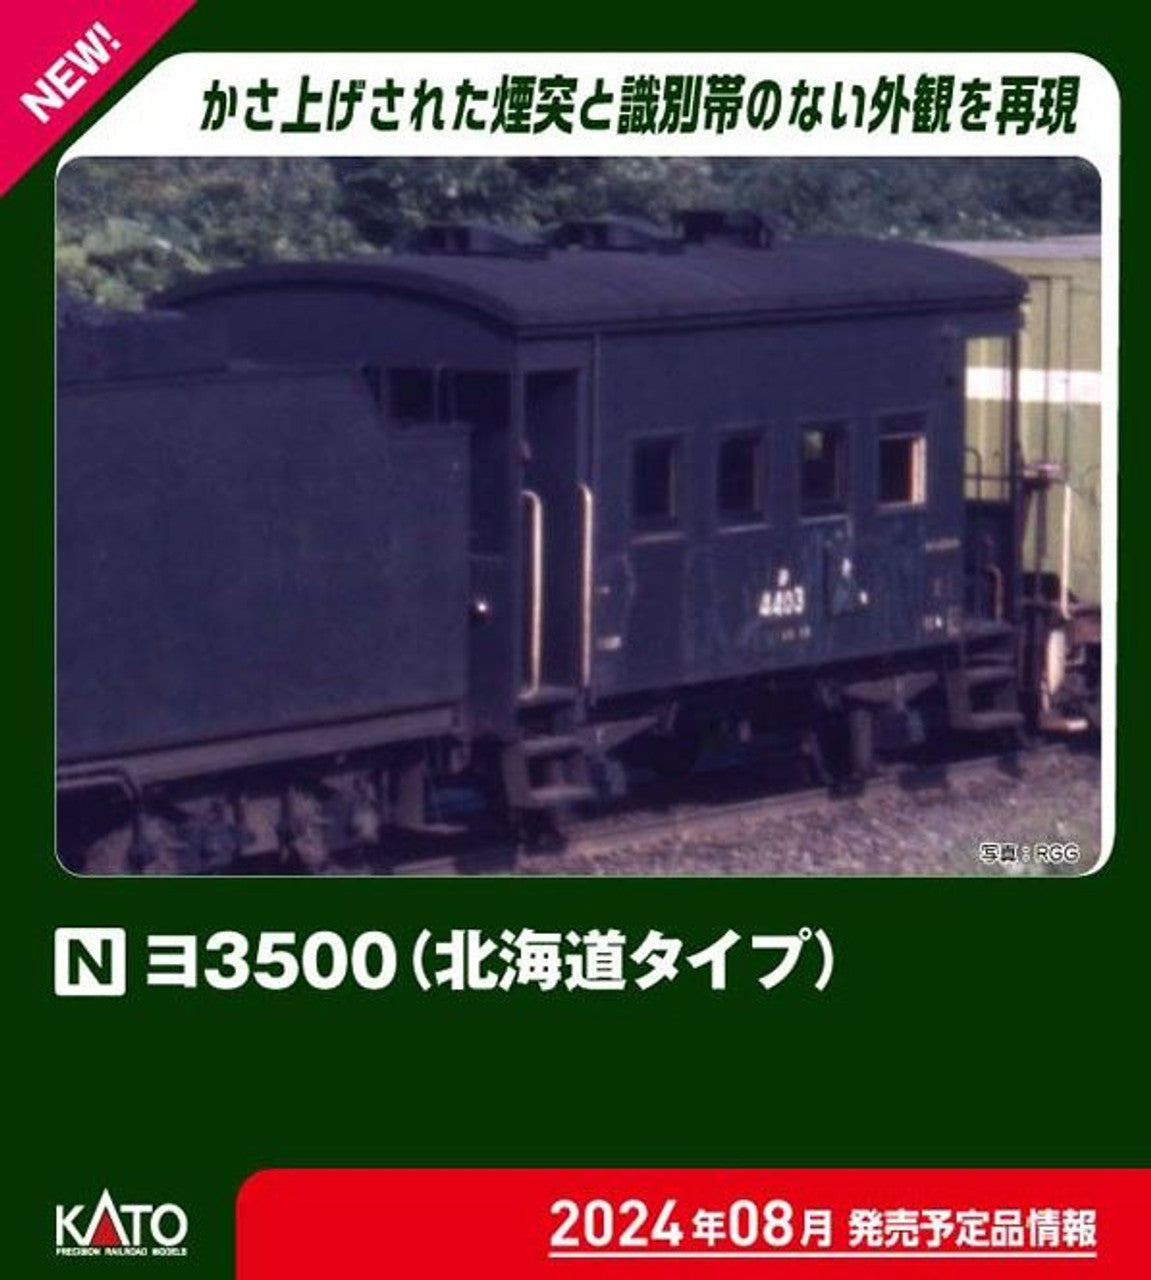 Kato [PO AUG 2024] 8035-2 Freight Car YO 3500 (Hokkaido Type) (N scale) - BanzaiHobby